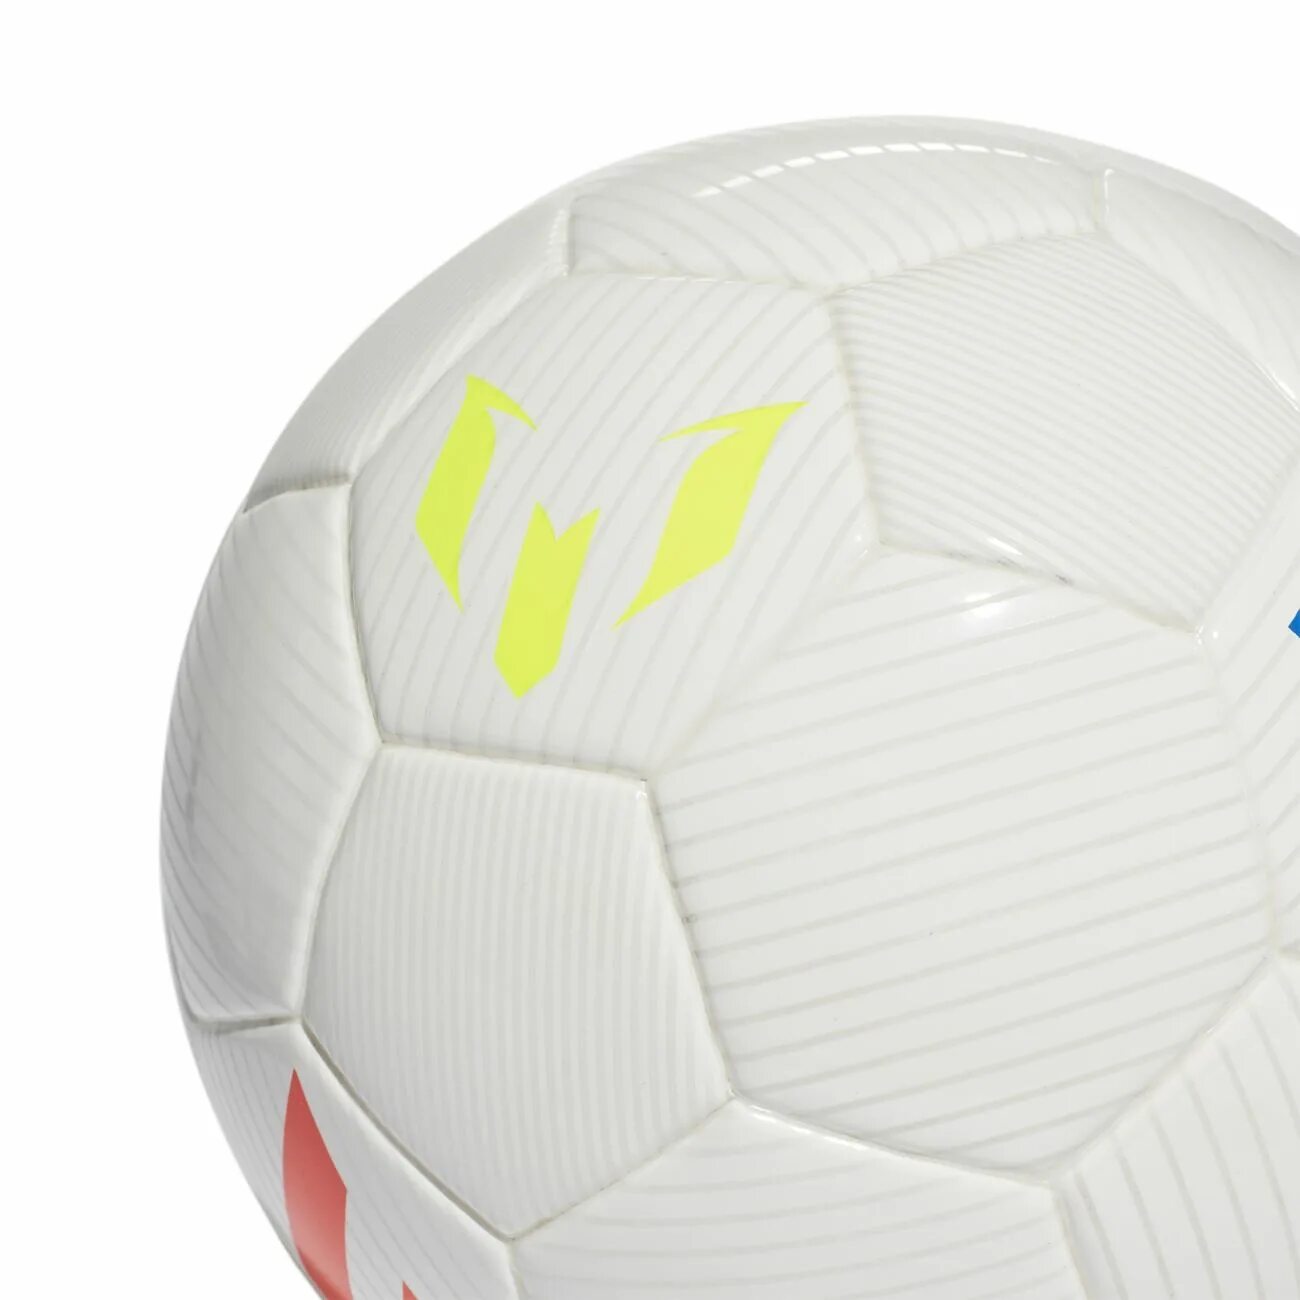 Messi adidas футбольный мяч Mini. Мяч адидас Месси. Месси с мячом. Мяч футбольный адидас размер 1 мини. Какой мяч в мини футболе